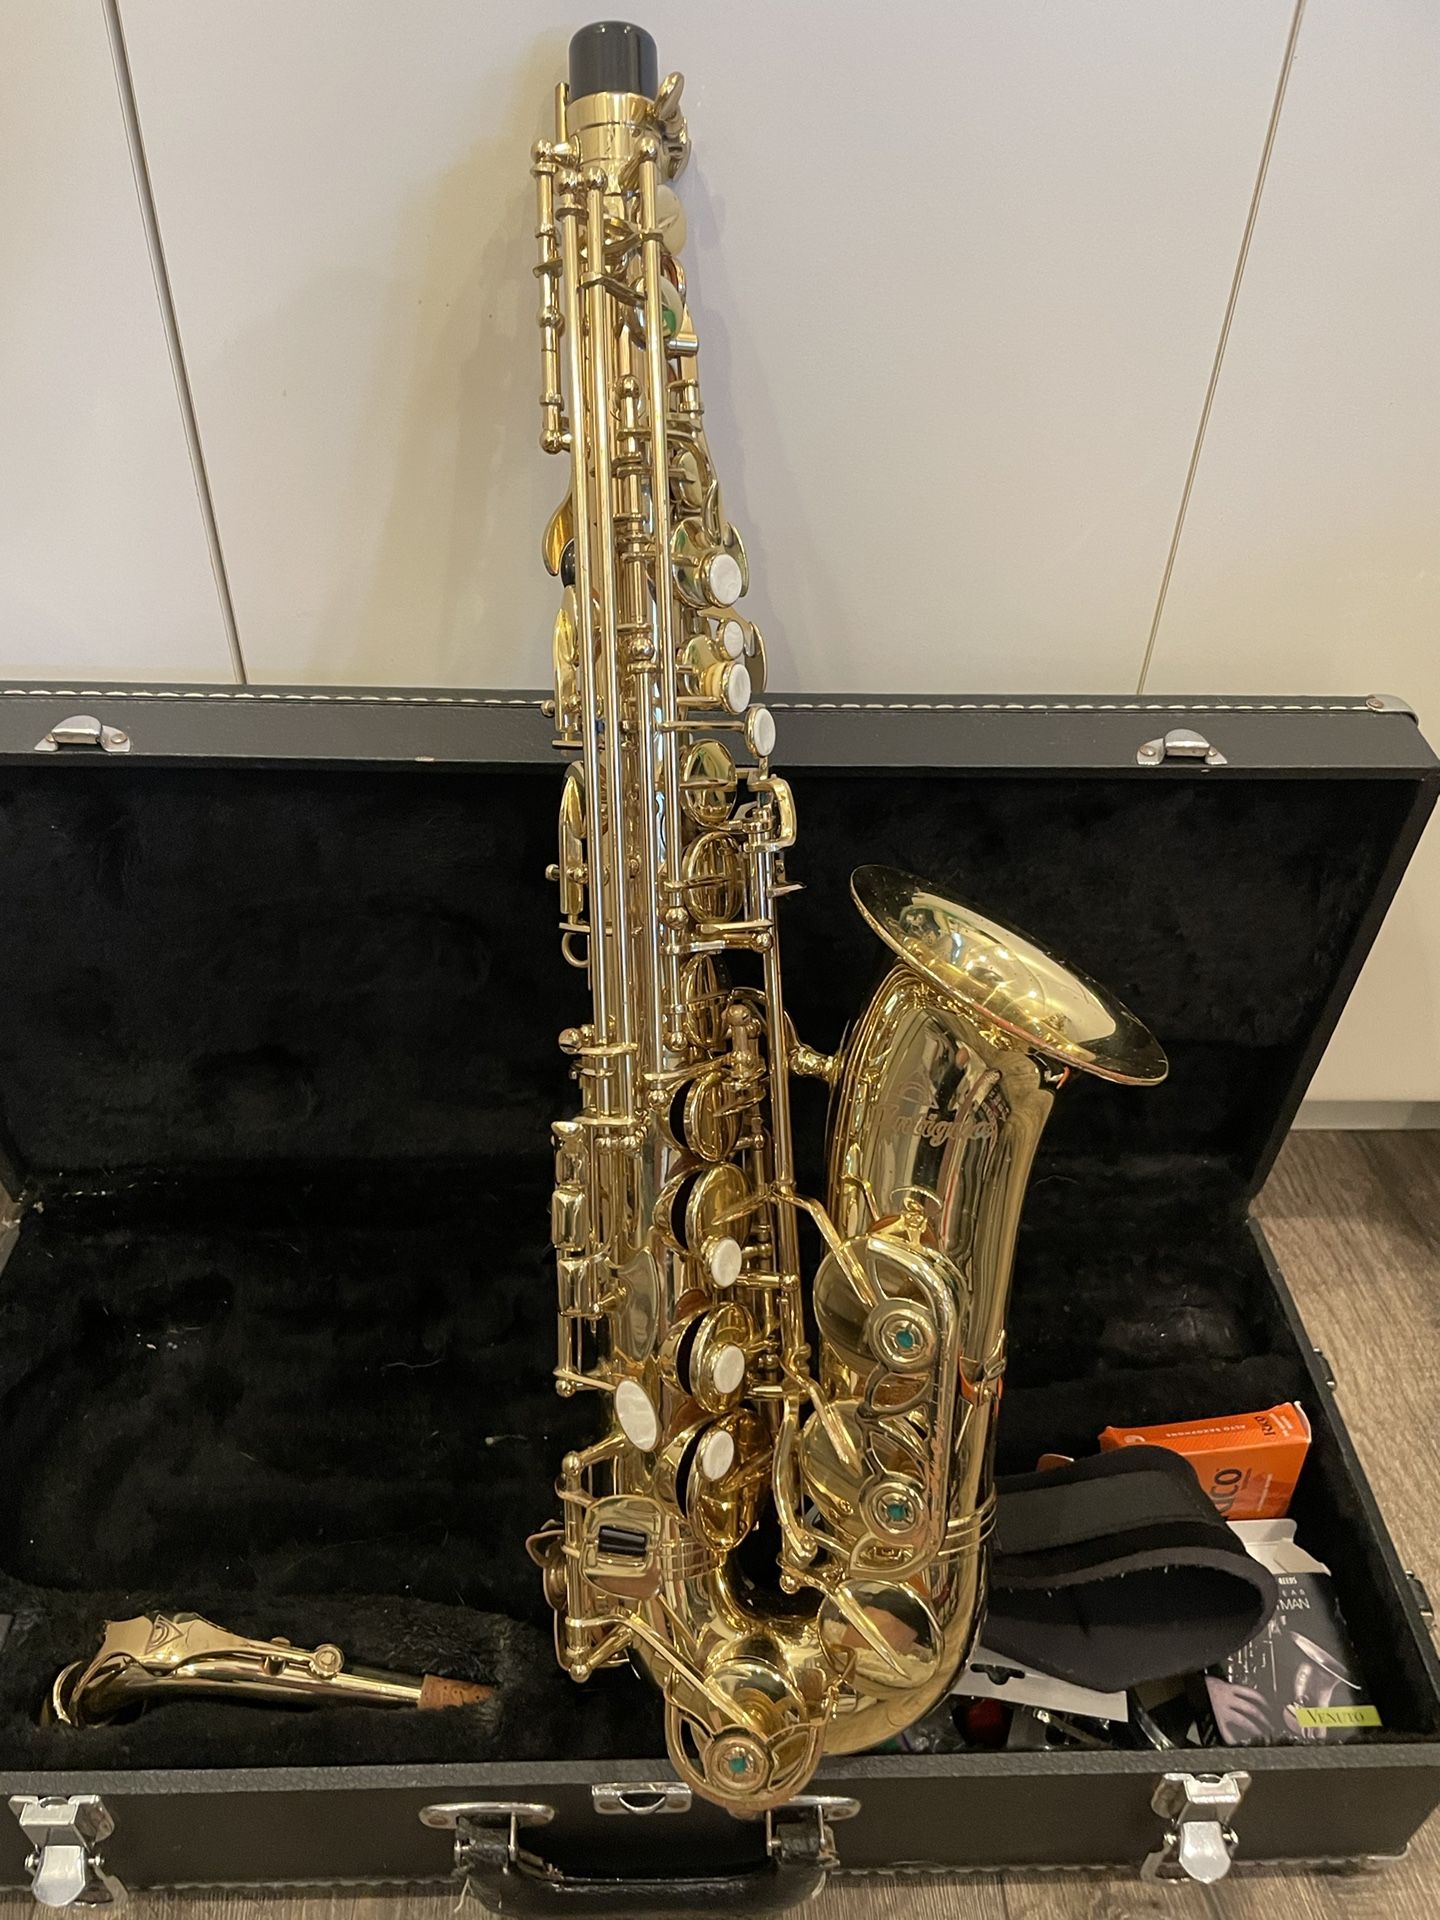 Antigua saxophone 